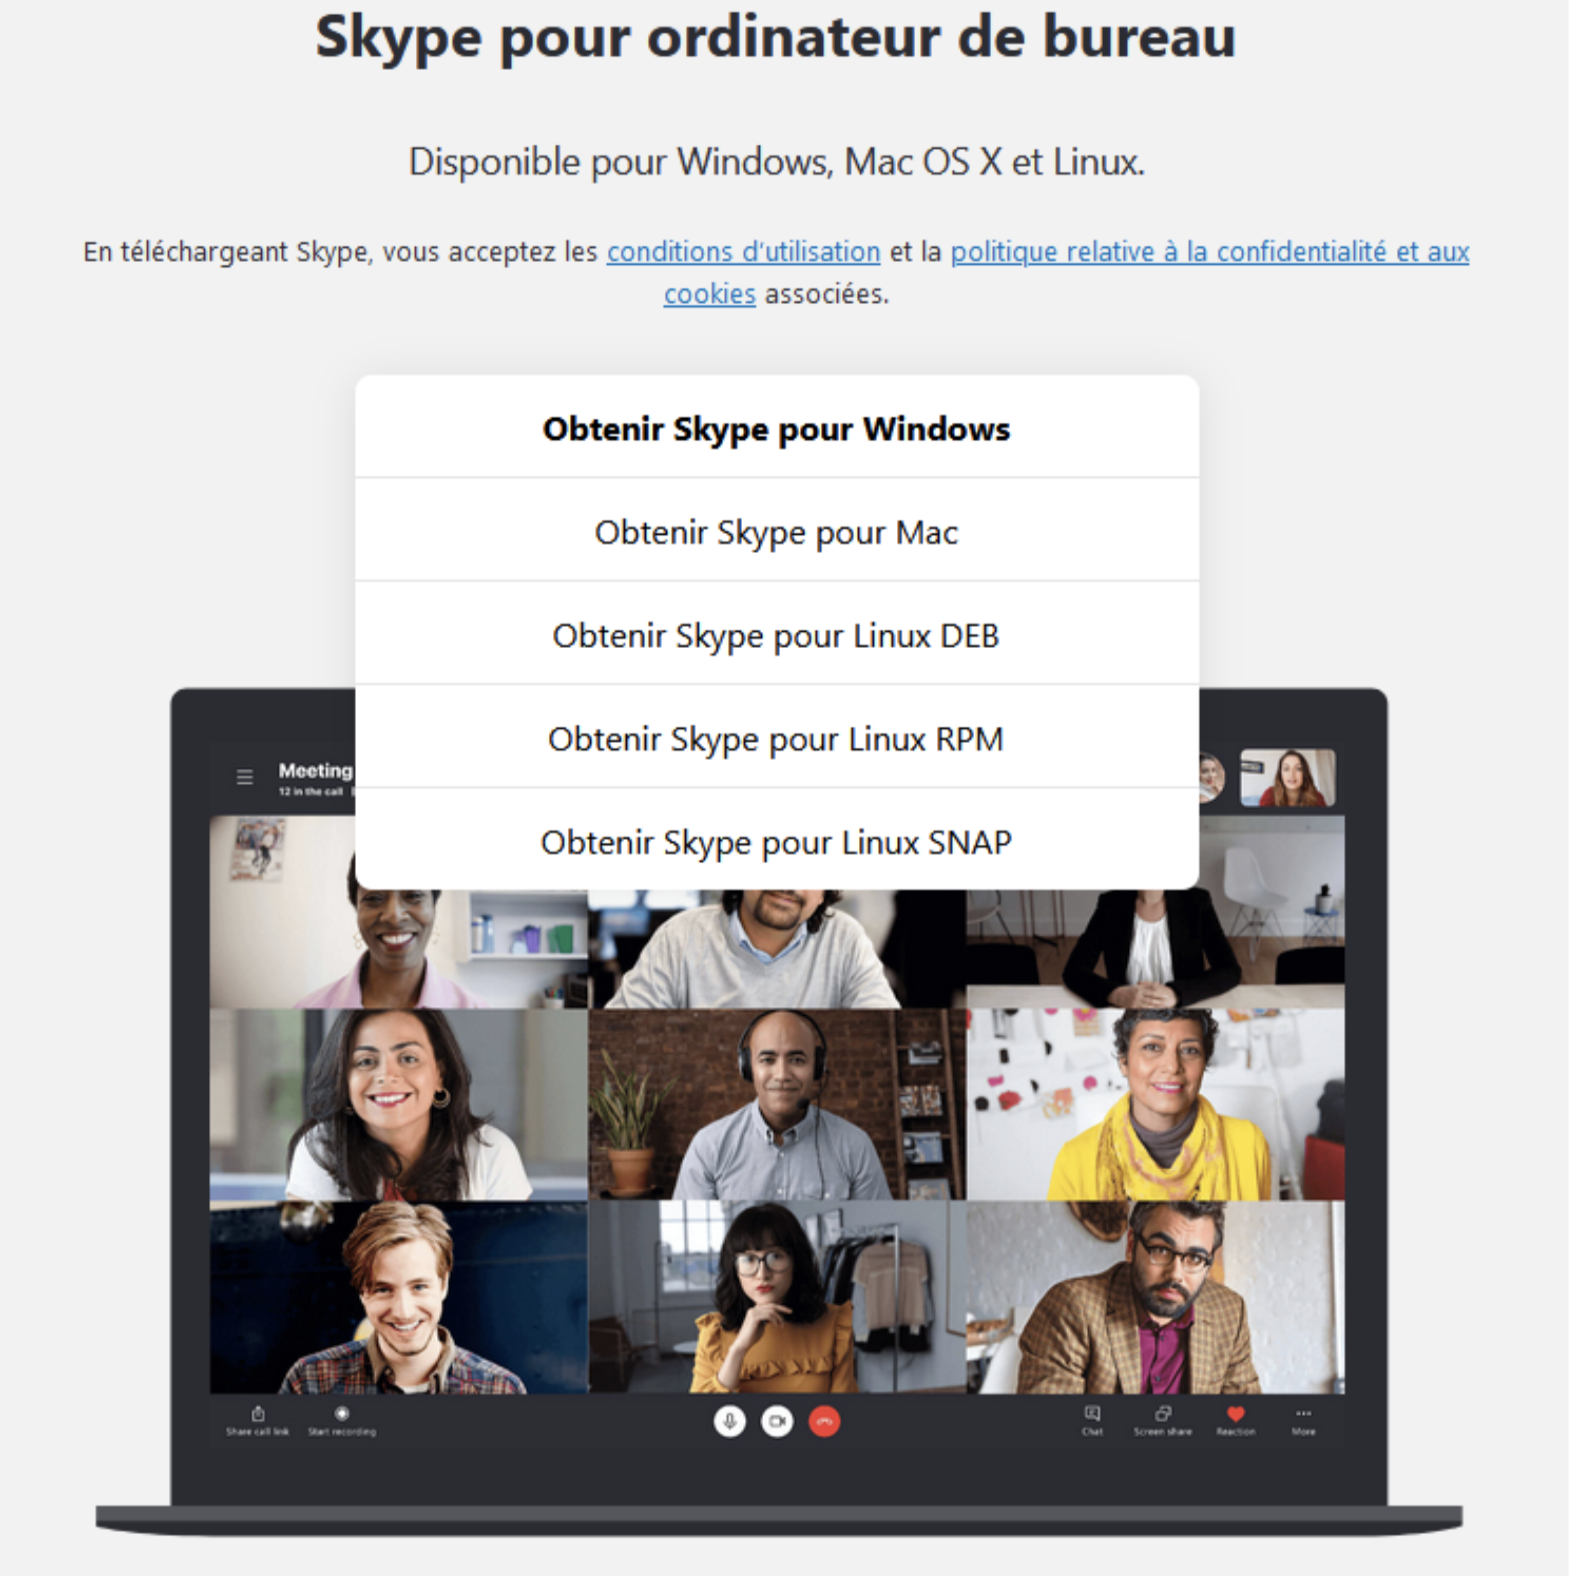 Choix du type d'ordinateur pour utiliser Skype